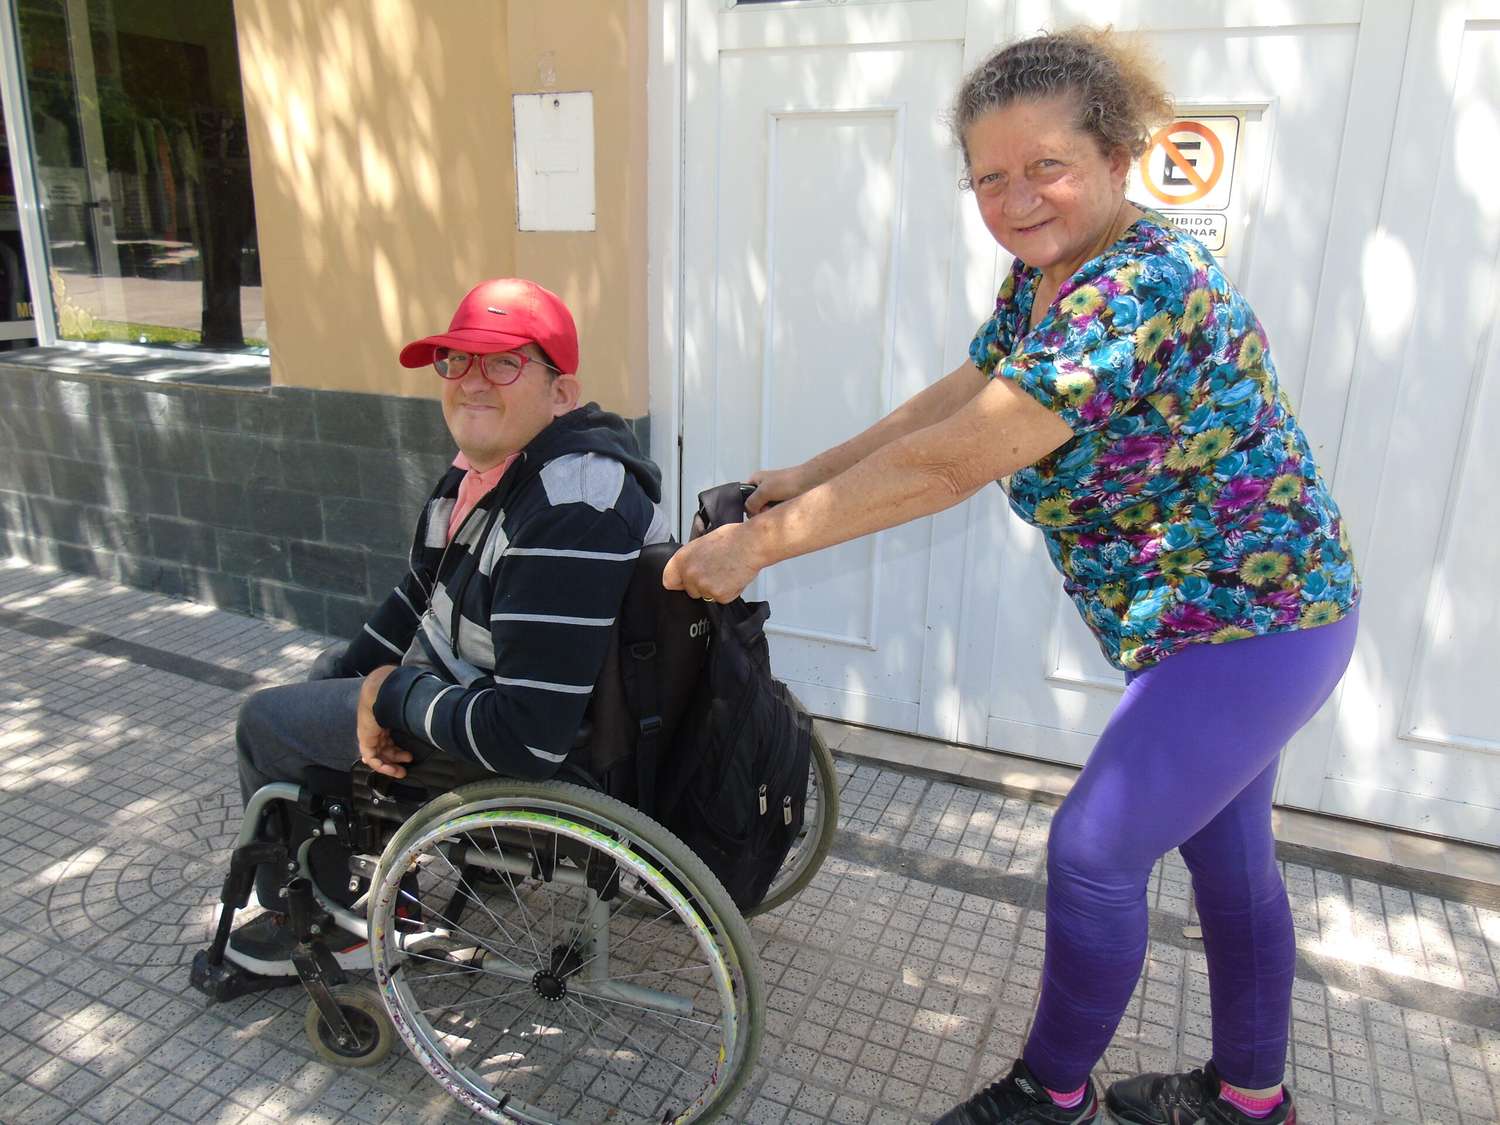 “Cualquier persona con discapacidad no quiere caridad, quiere autonomía”